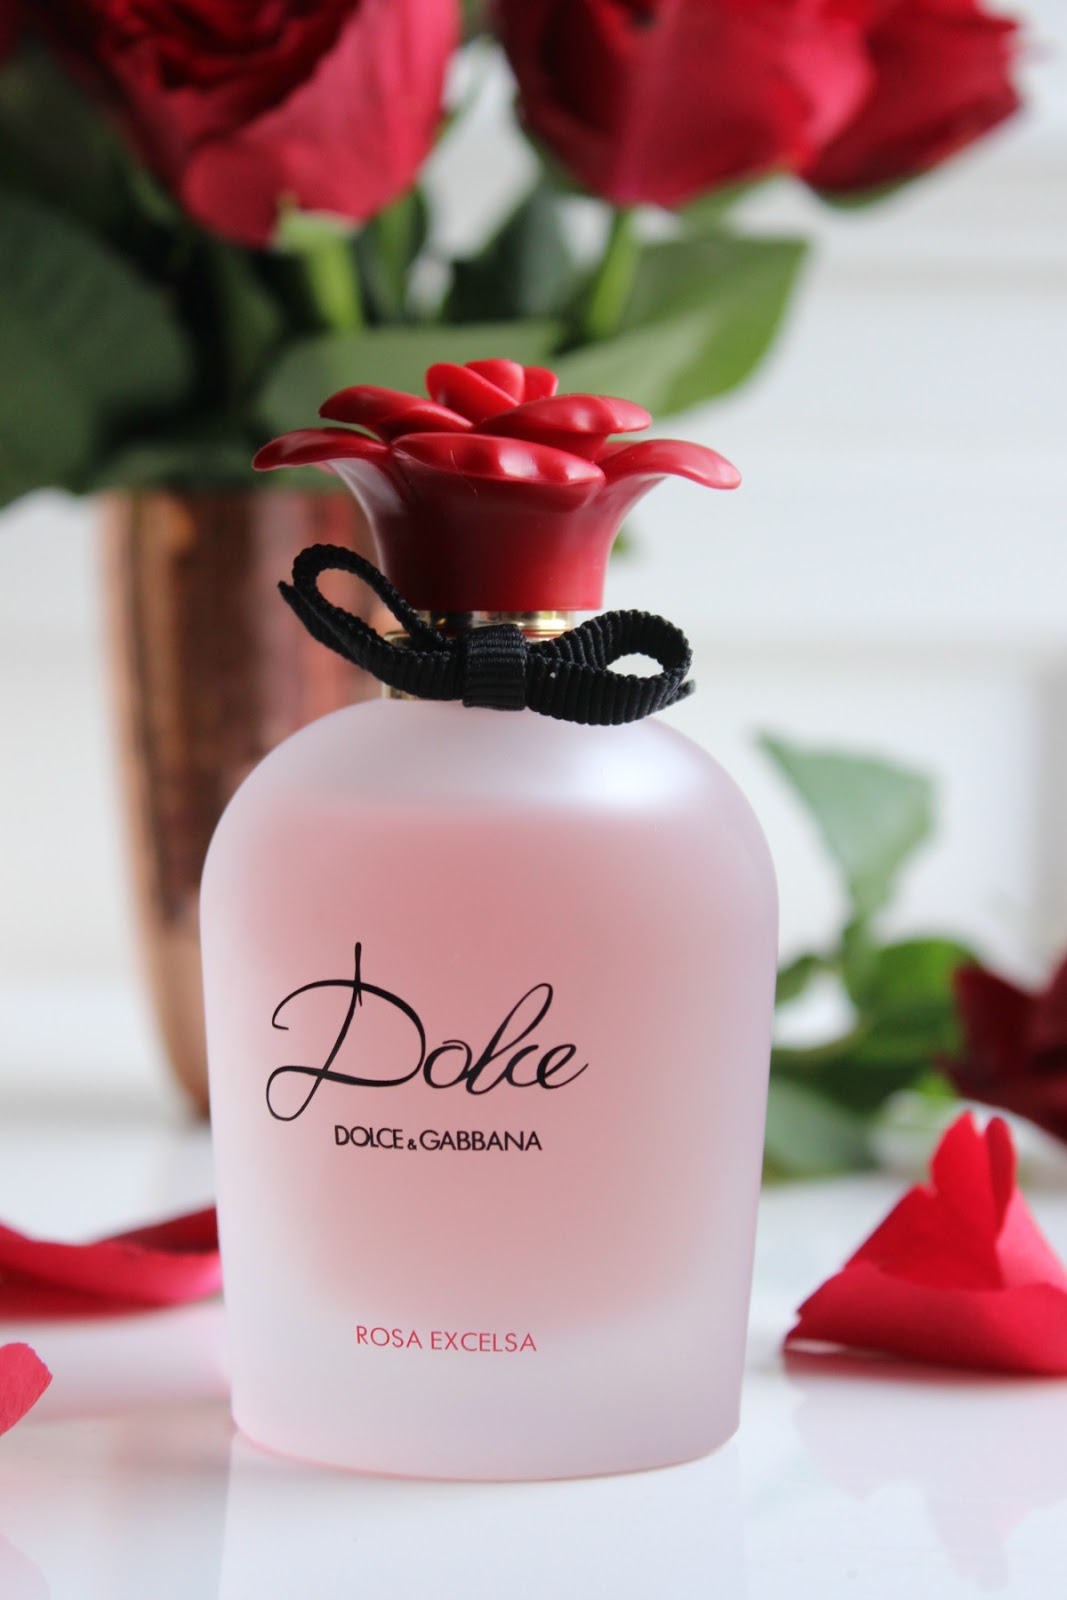 Dolce and Gabbana, Dolce Rosa Excelsa Eau de Parfum